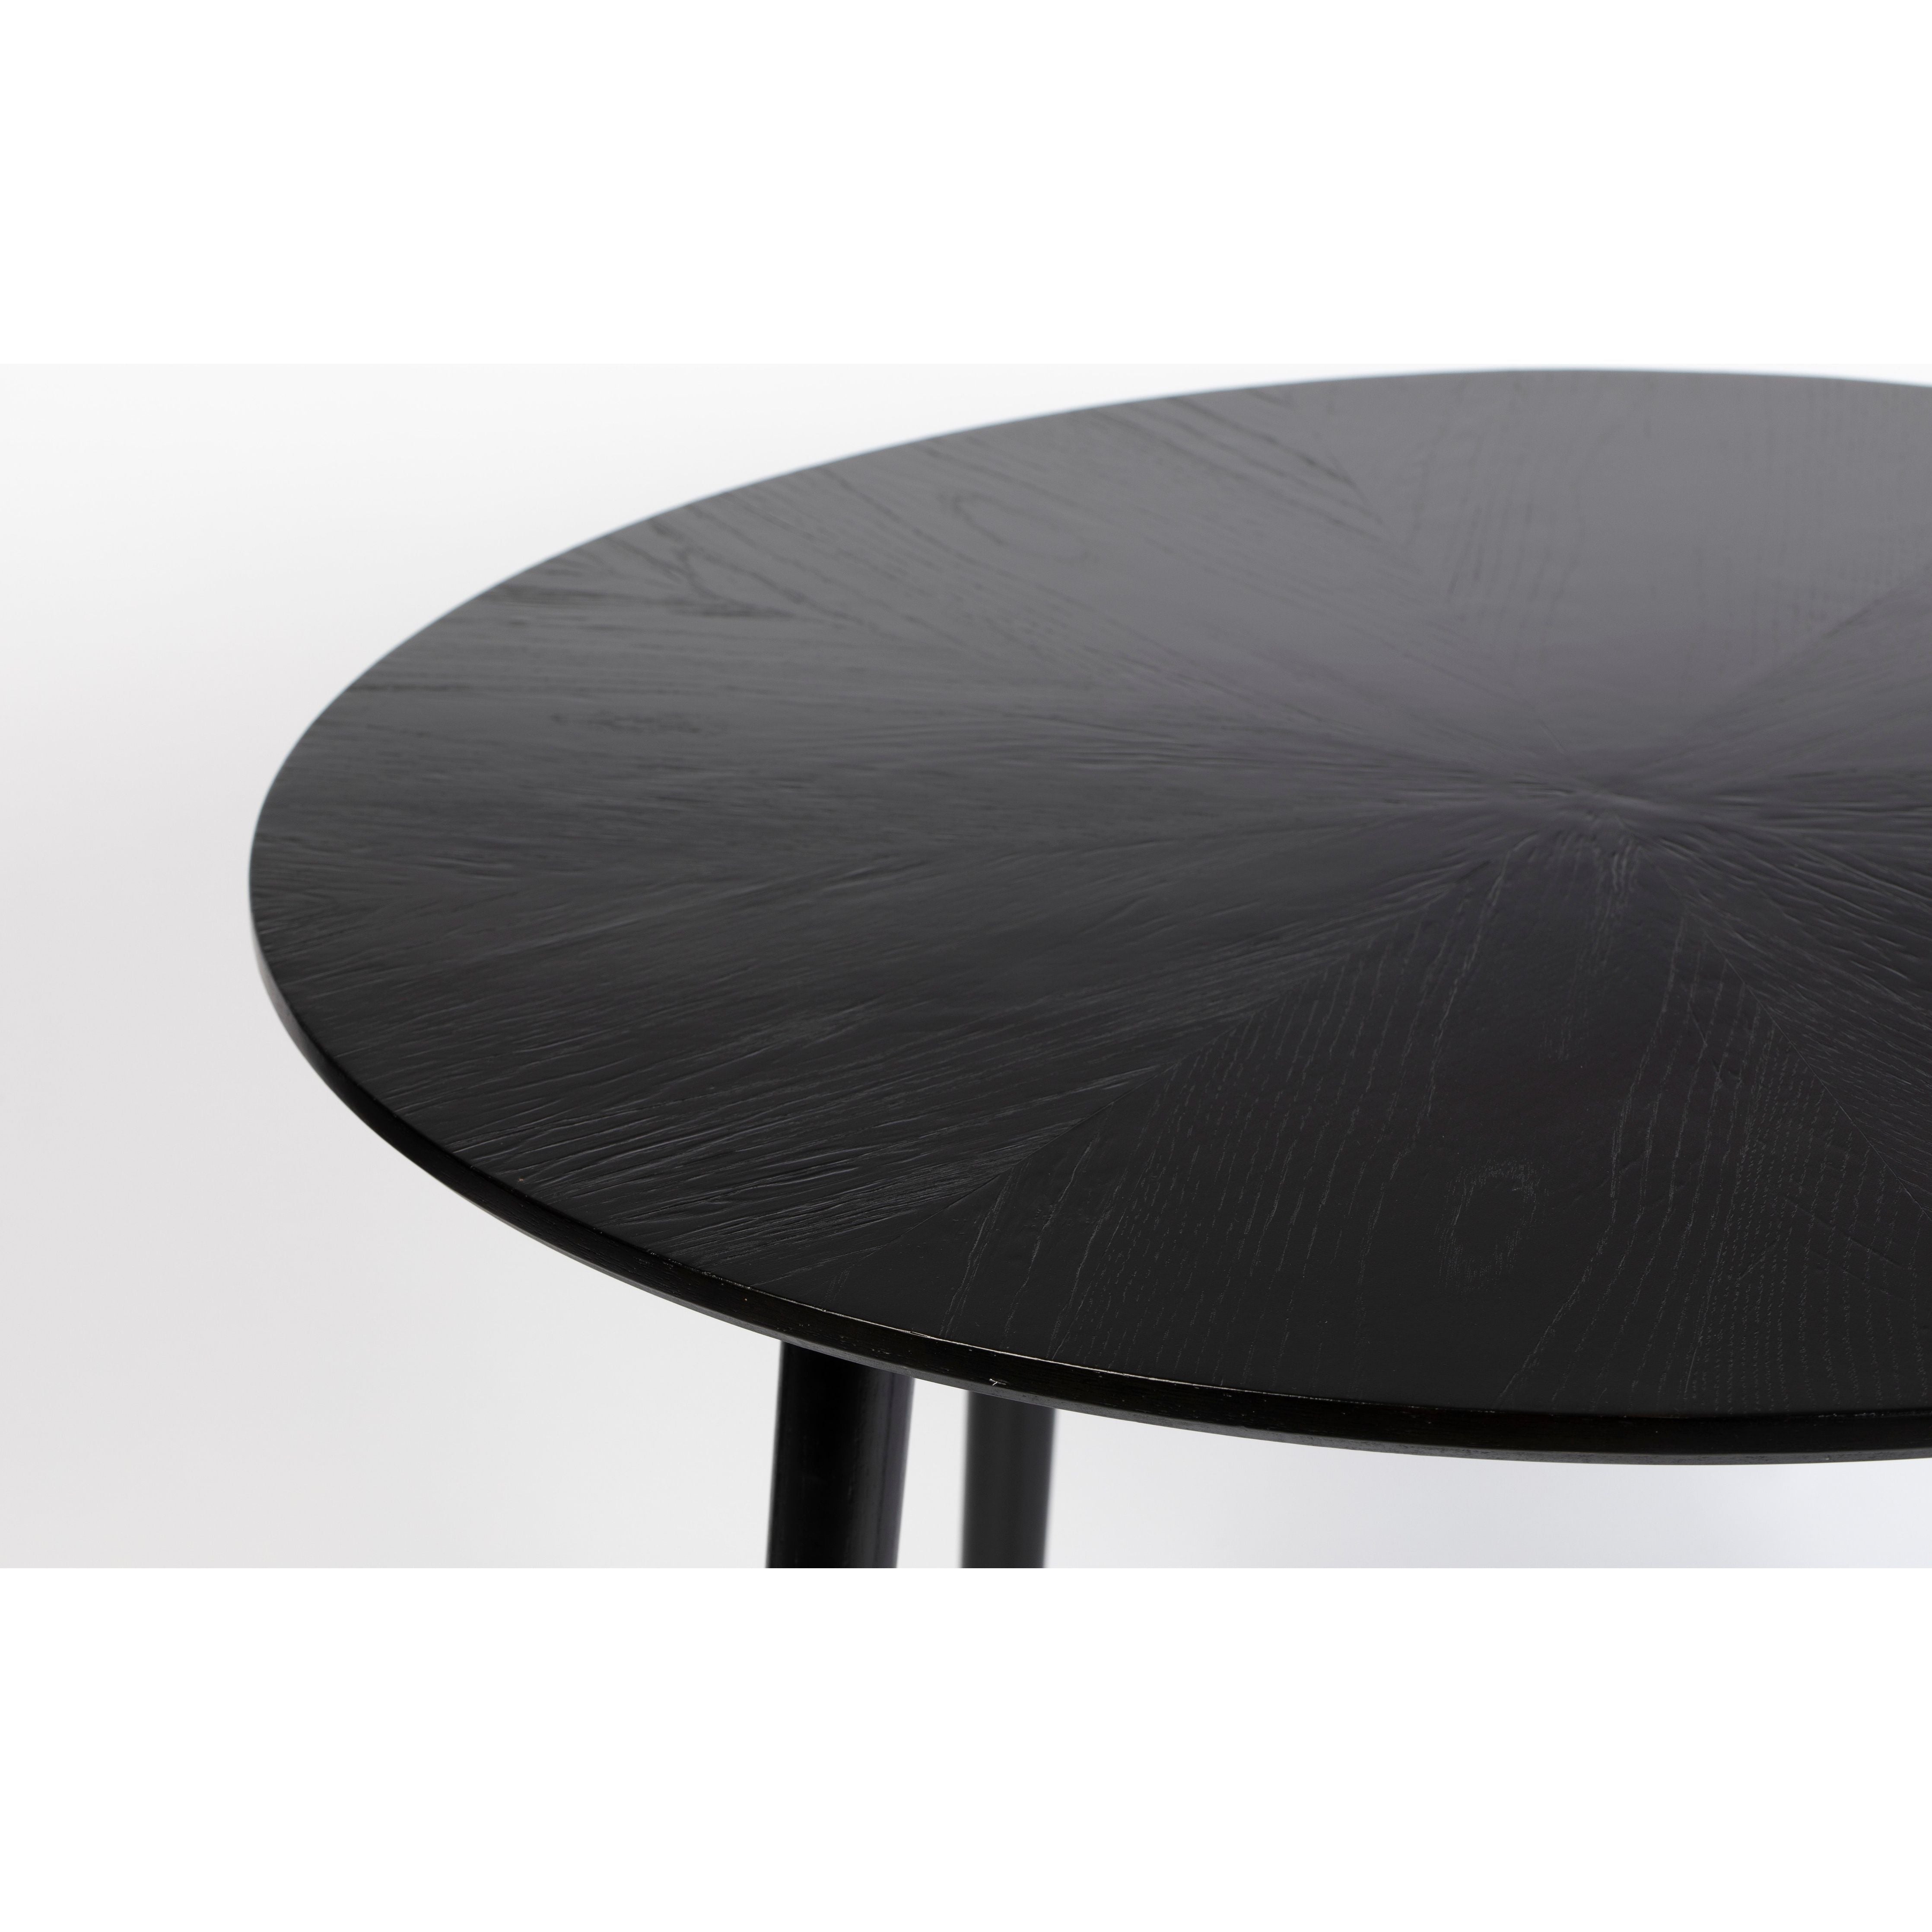 Table fabio 100' black